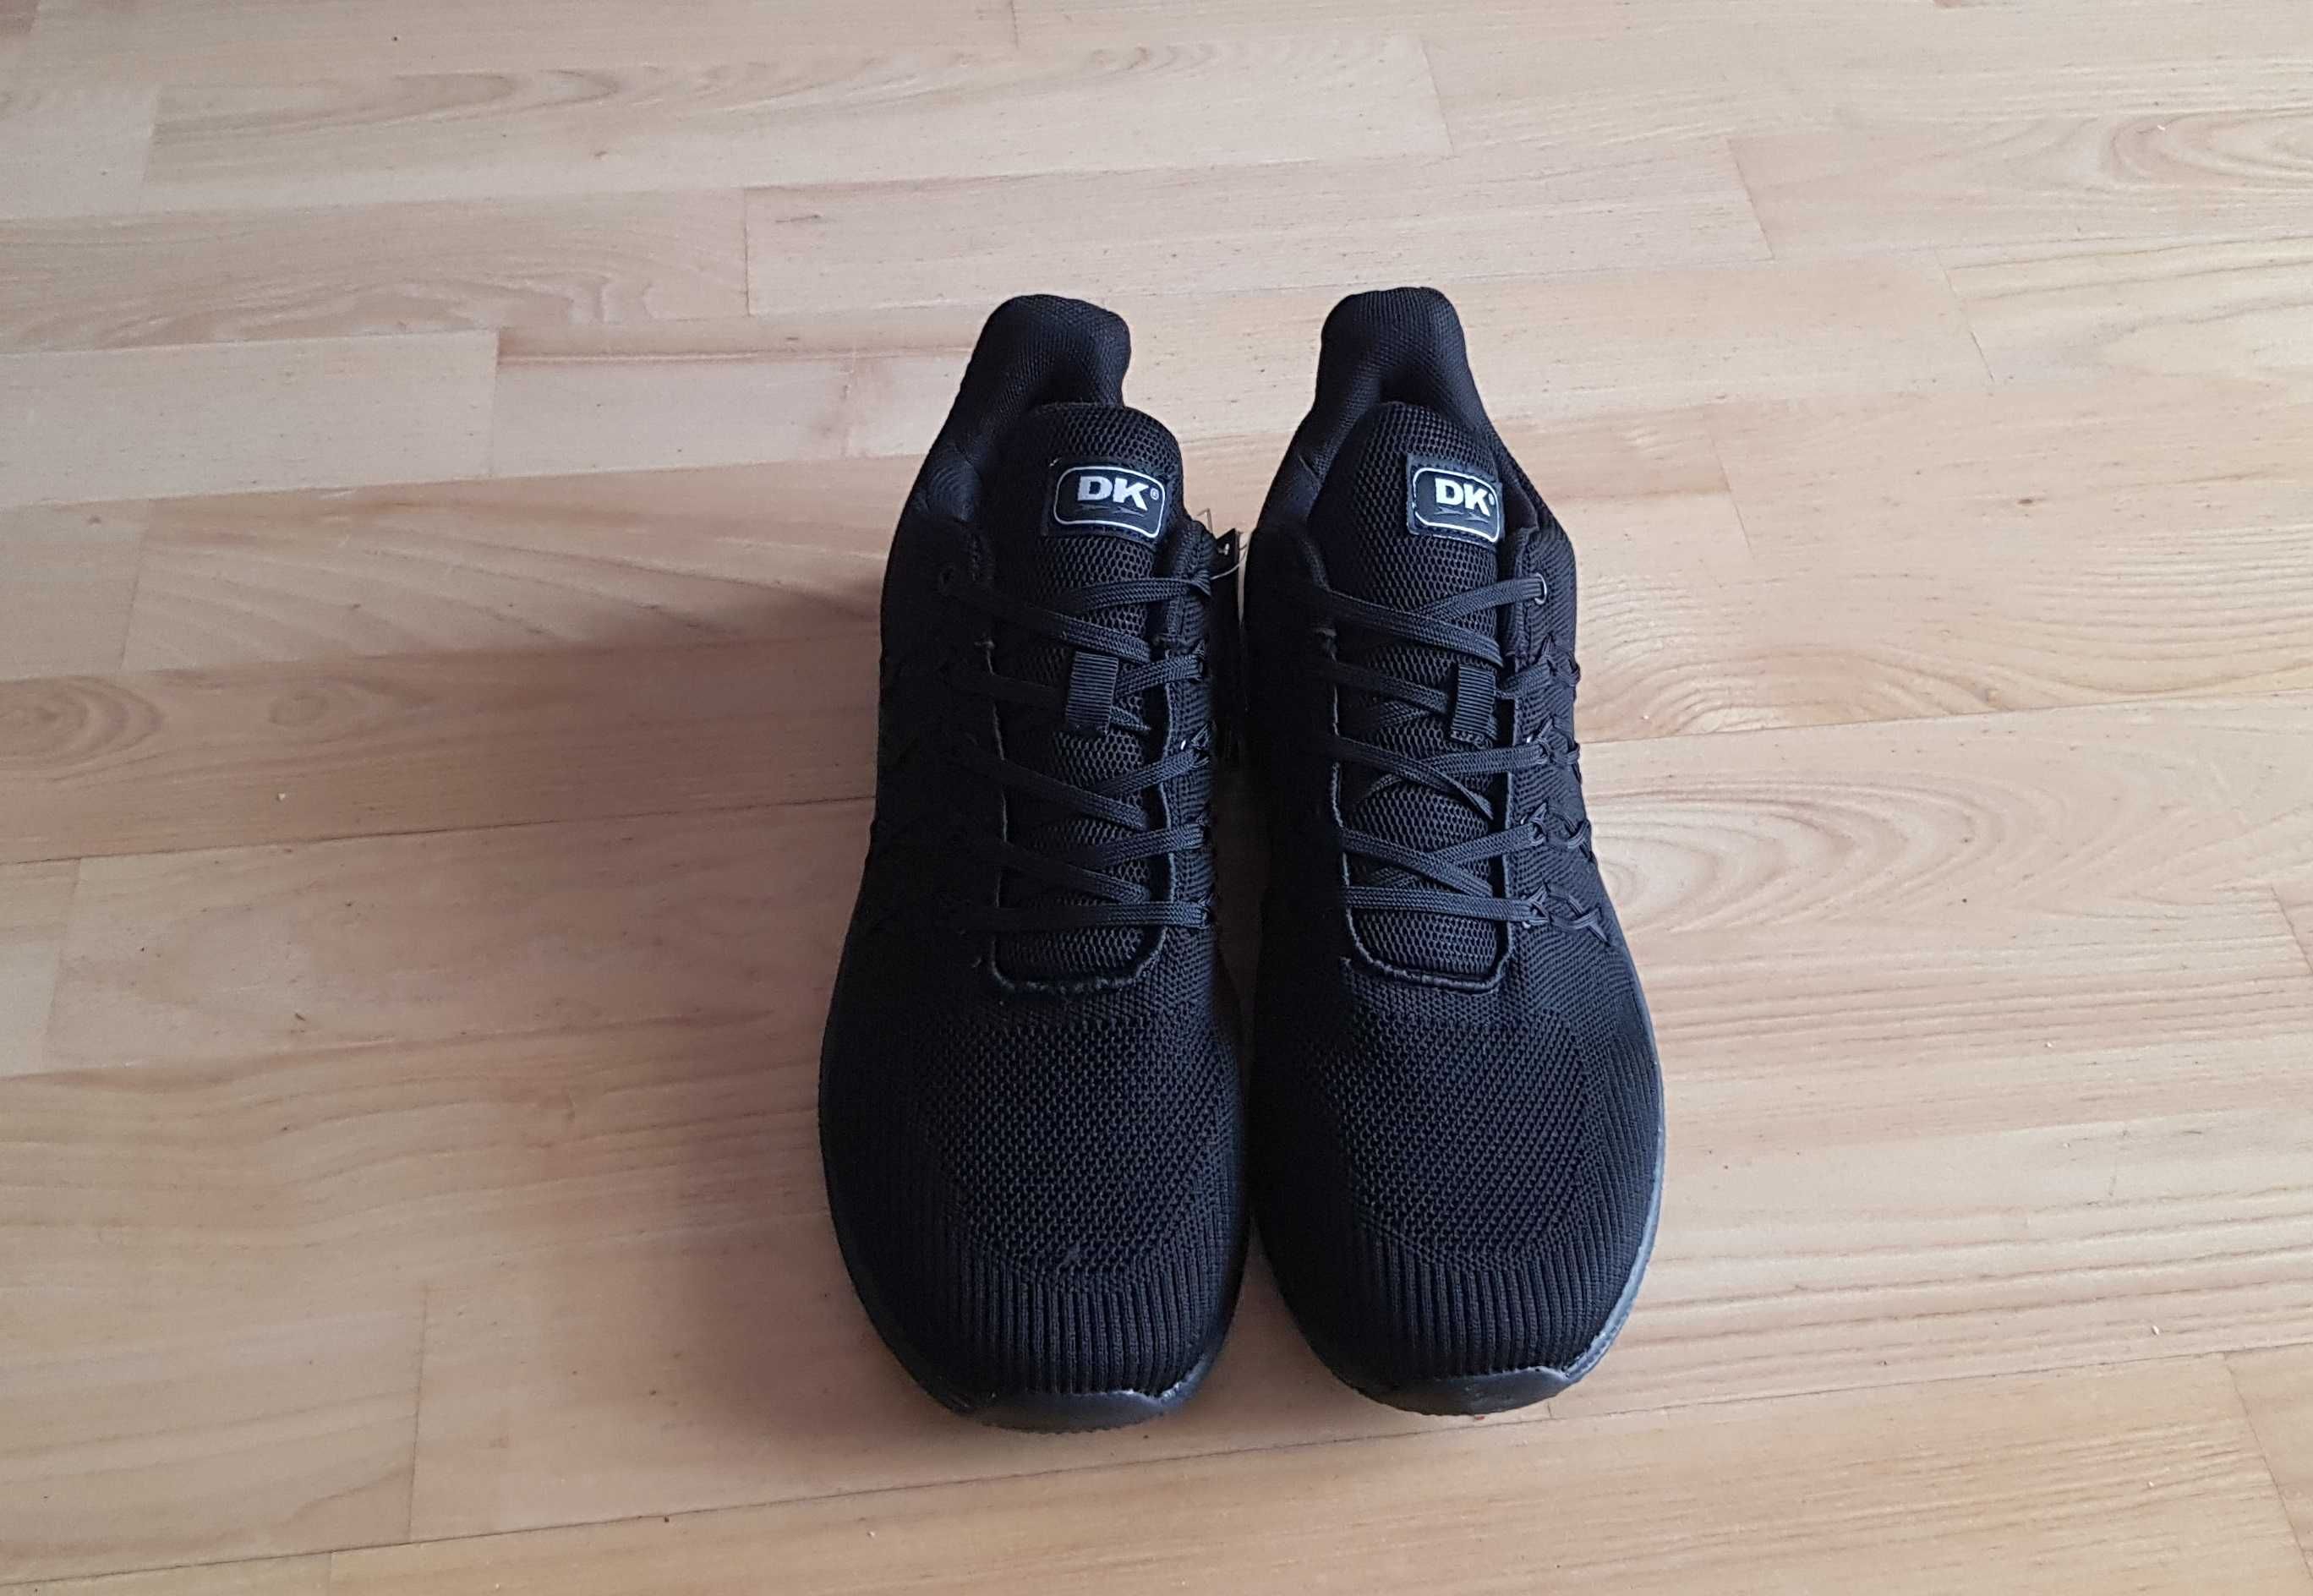 czarne buty siatkowe 41-46 DK